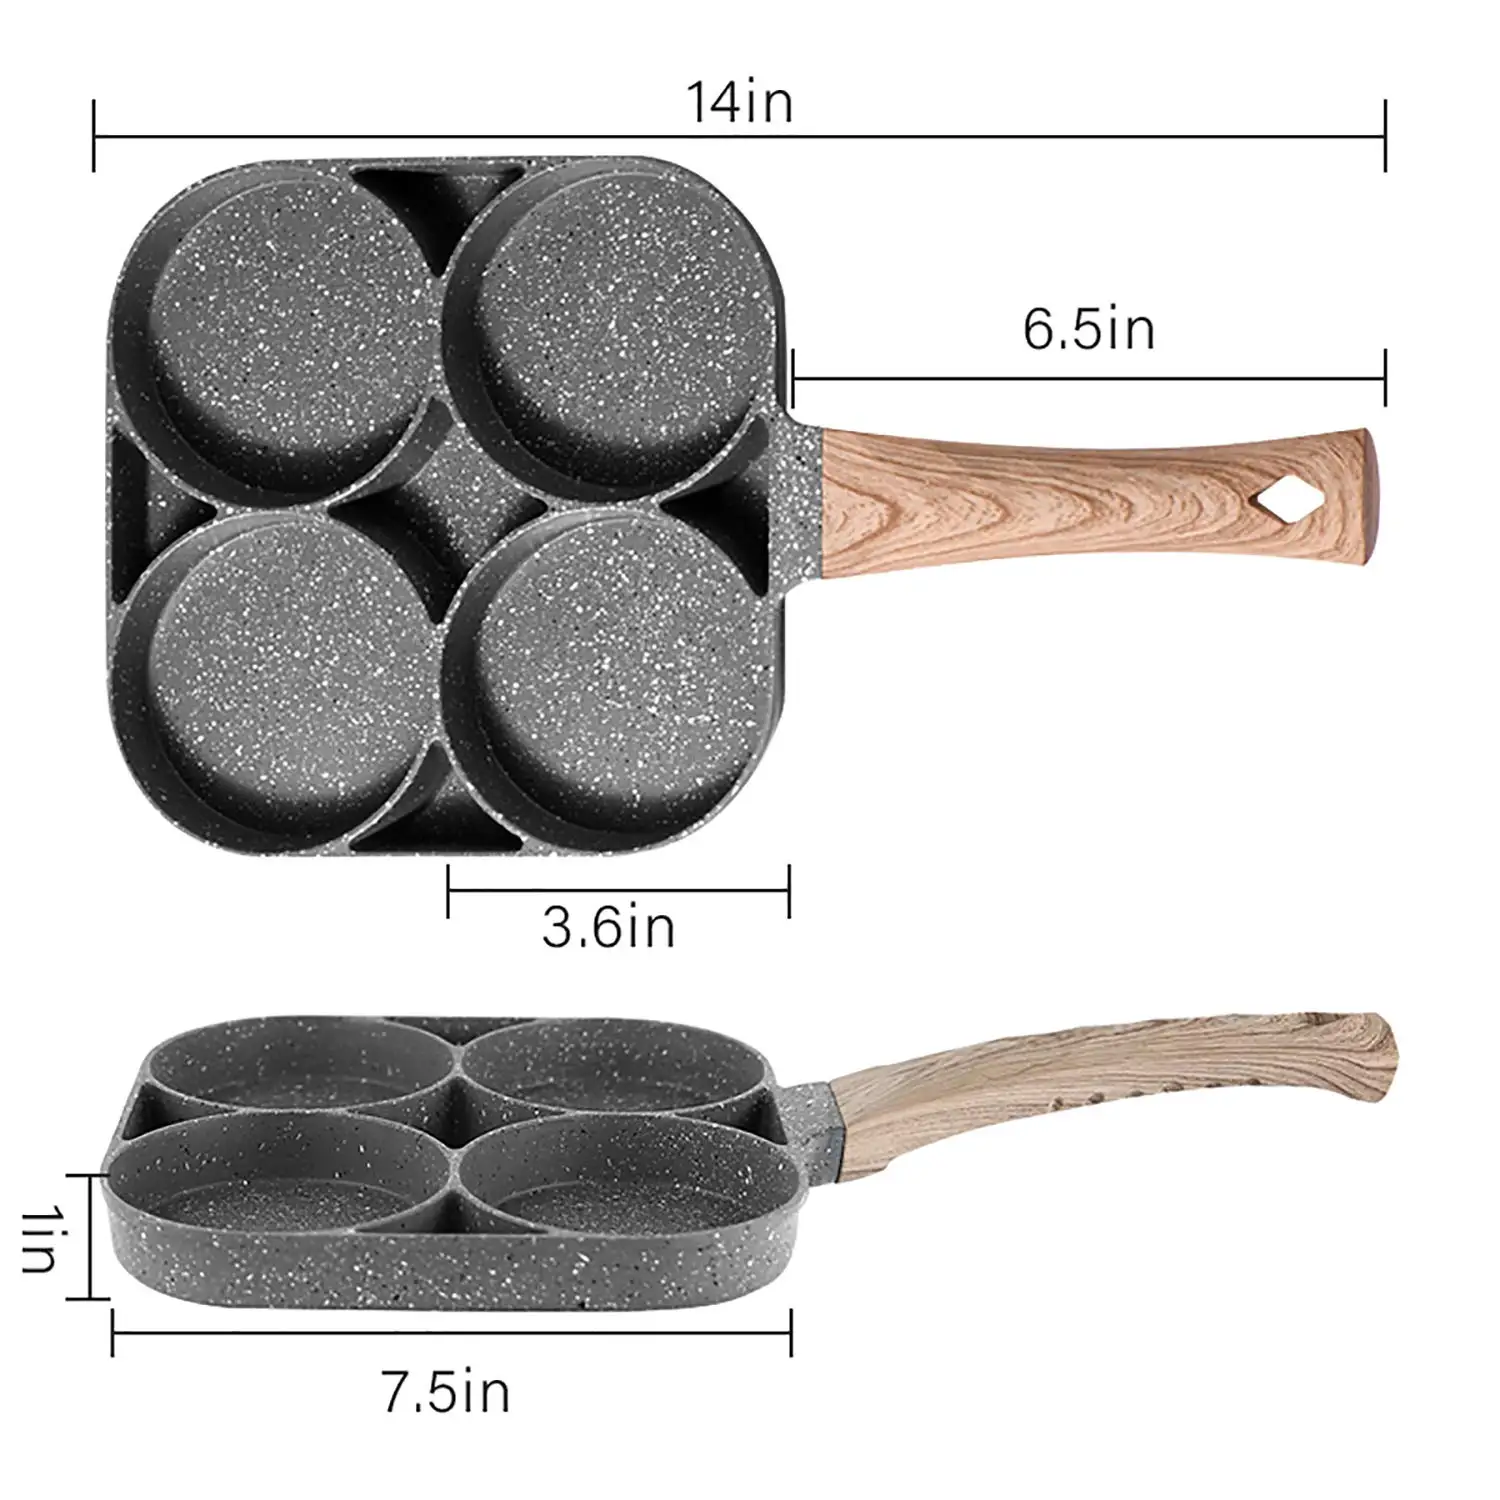 4 section frying pan DAZEN stone non-stick frying pan yongkang egg frying pan 3 hole square